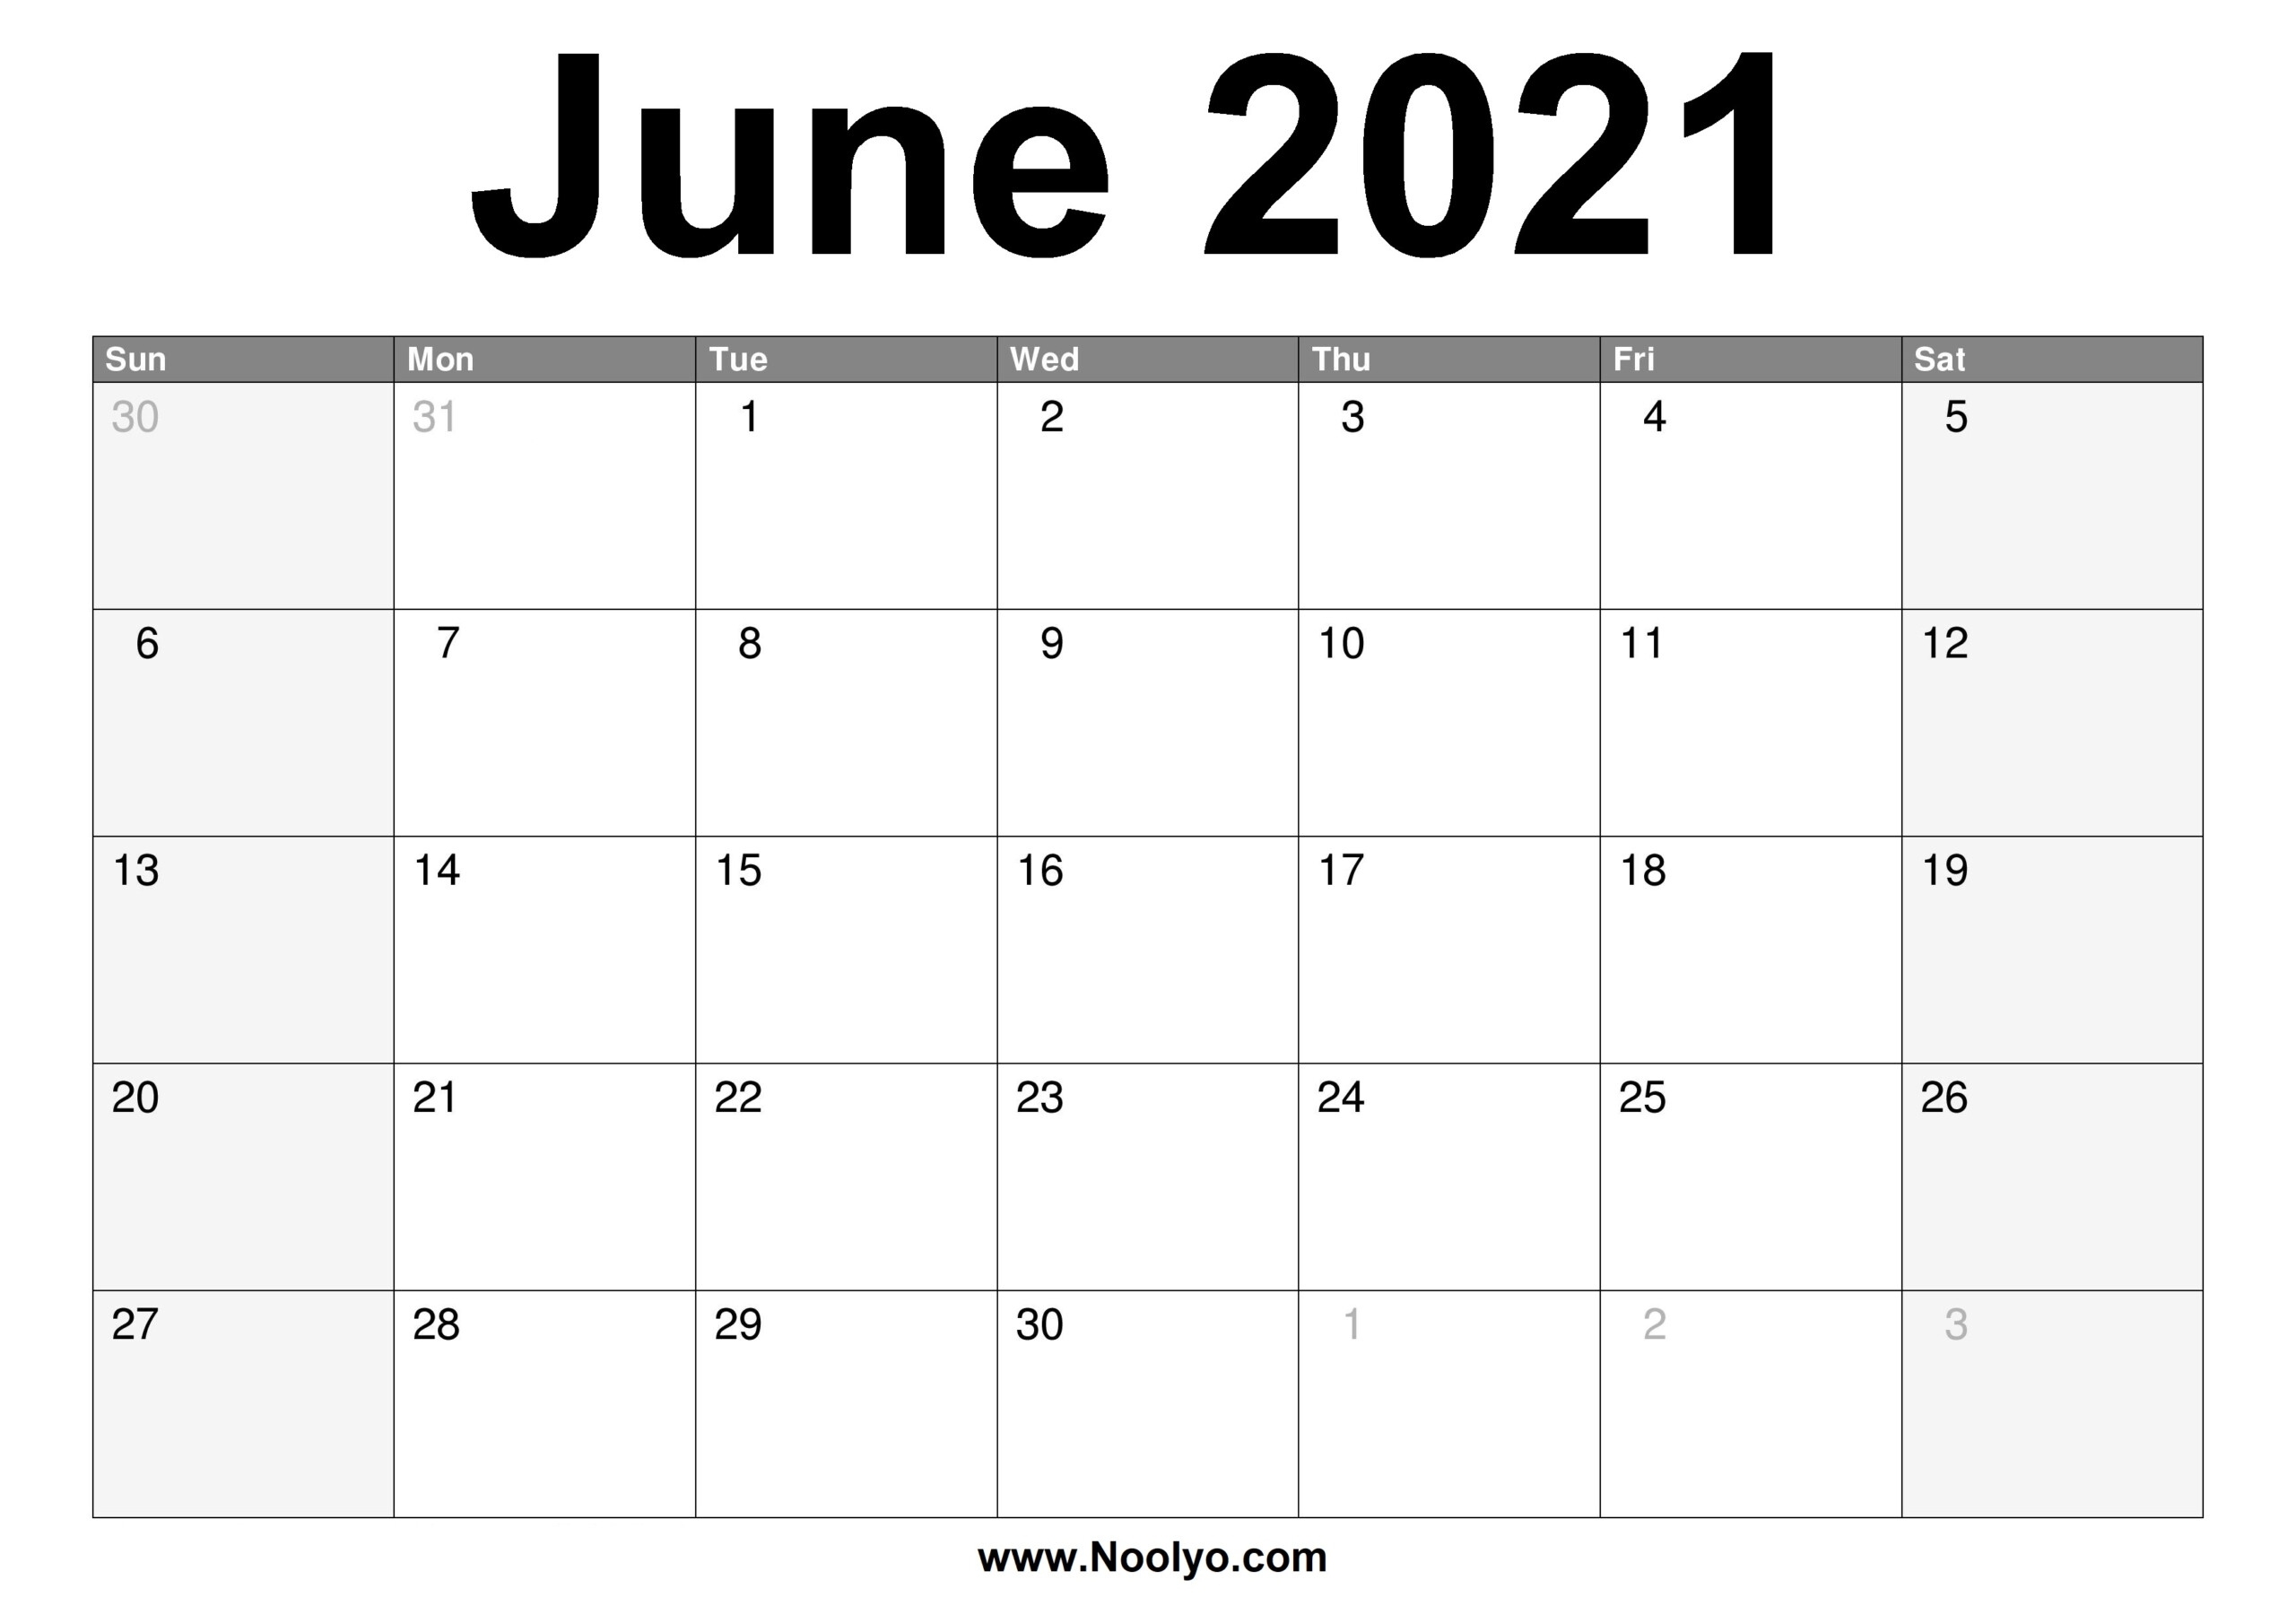 Calendar June 2021 | Printable Calendars 2021 June Calendar Of 2021